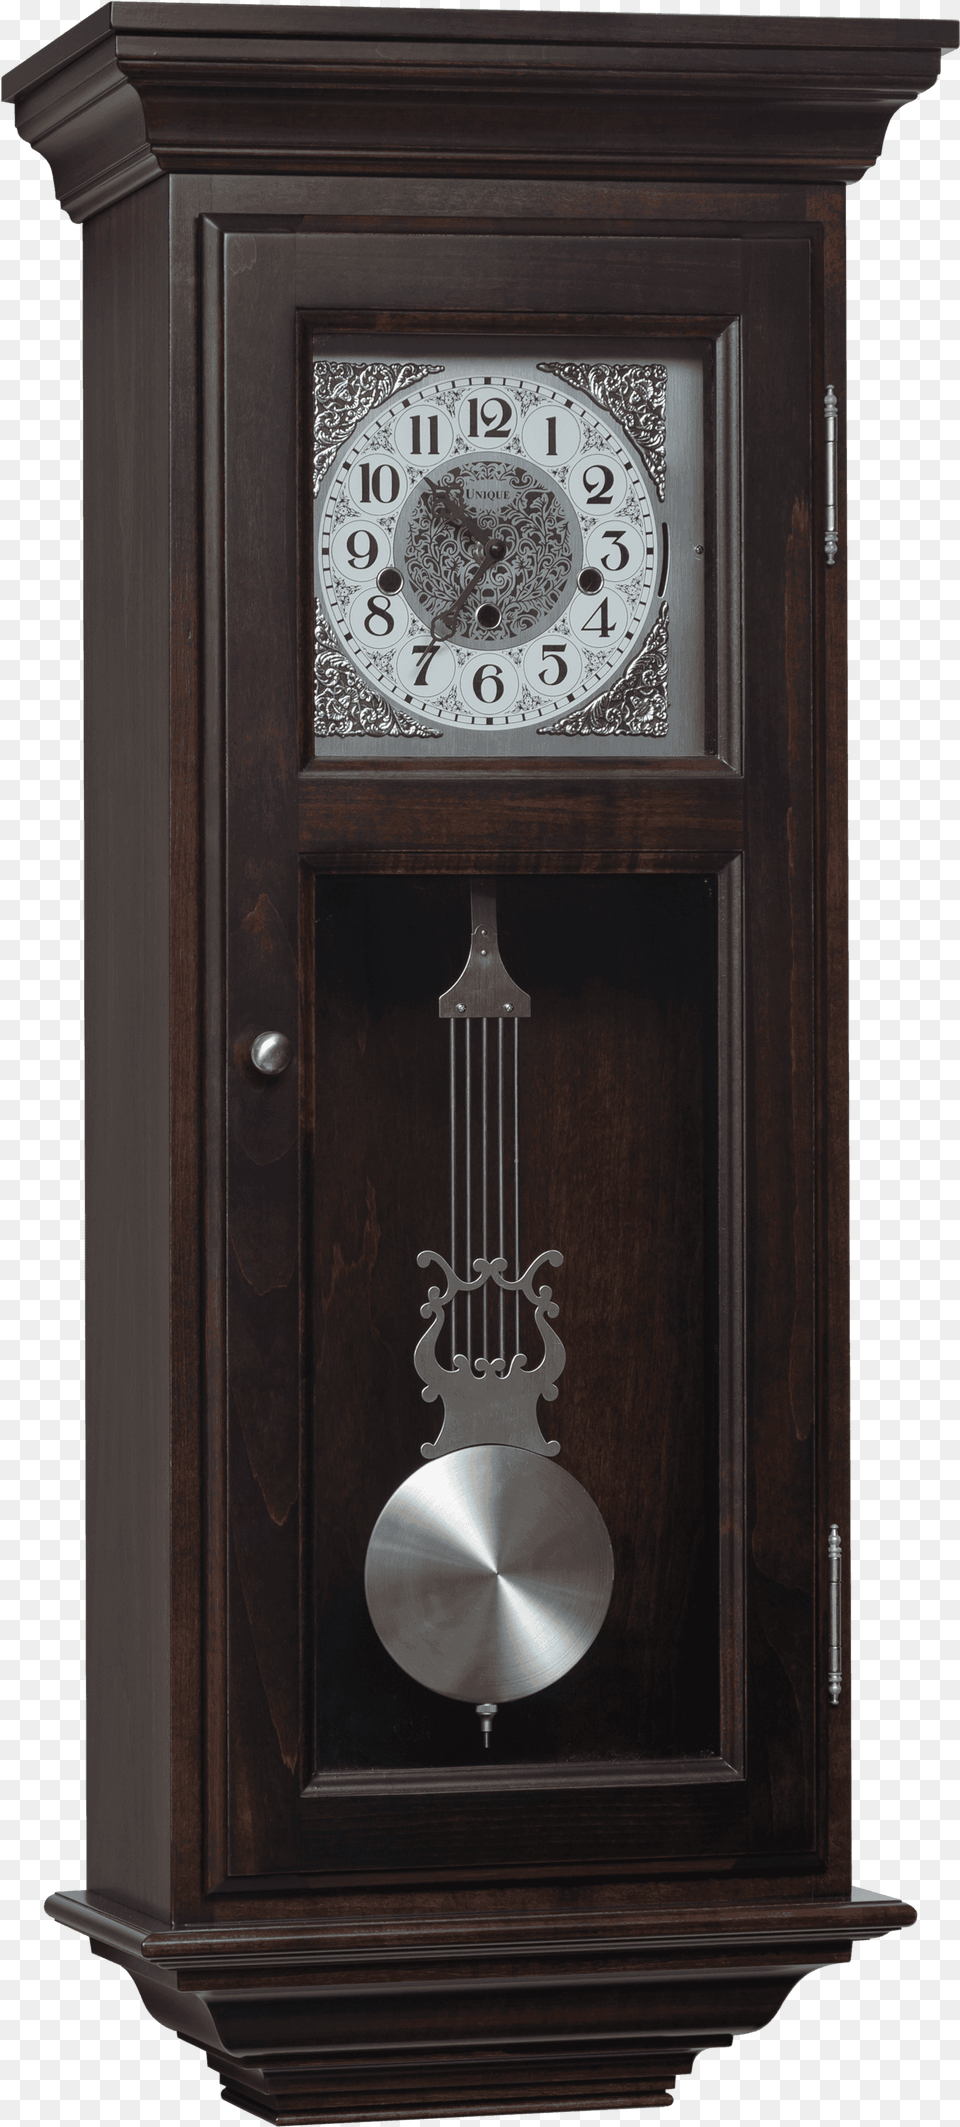 Handcrafted Wood Clocks, Mailbox, Clock, Wall Clock, Analog Clock Png Image